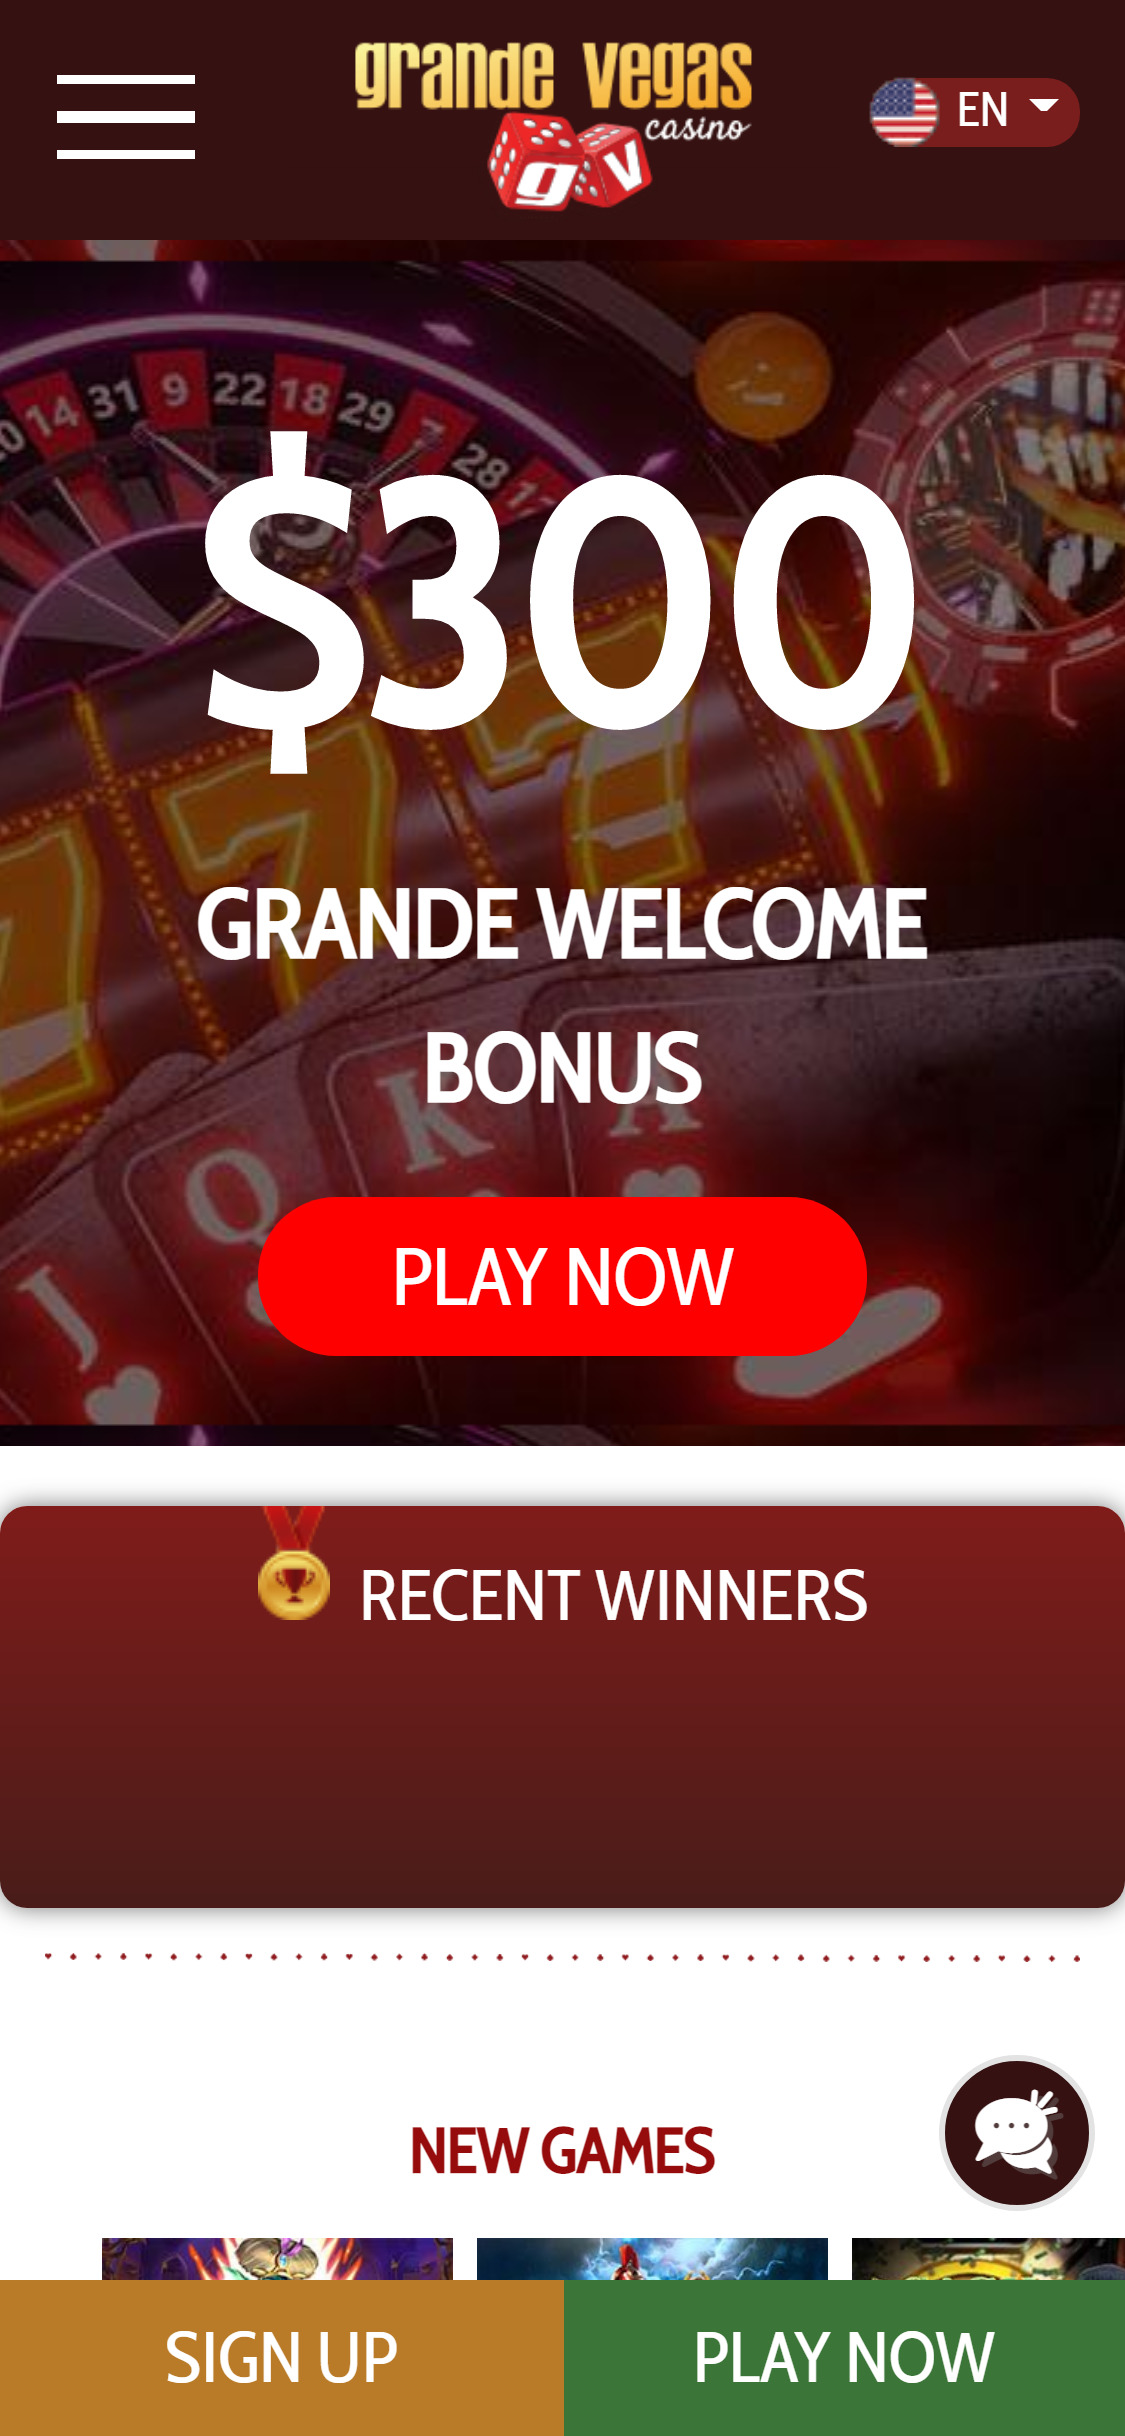 Grande Vegas Casino Mobile Login Review